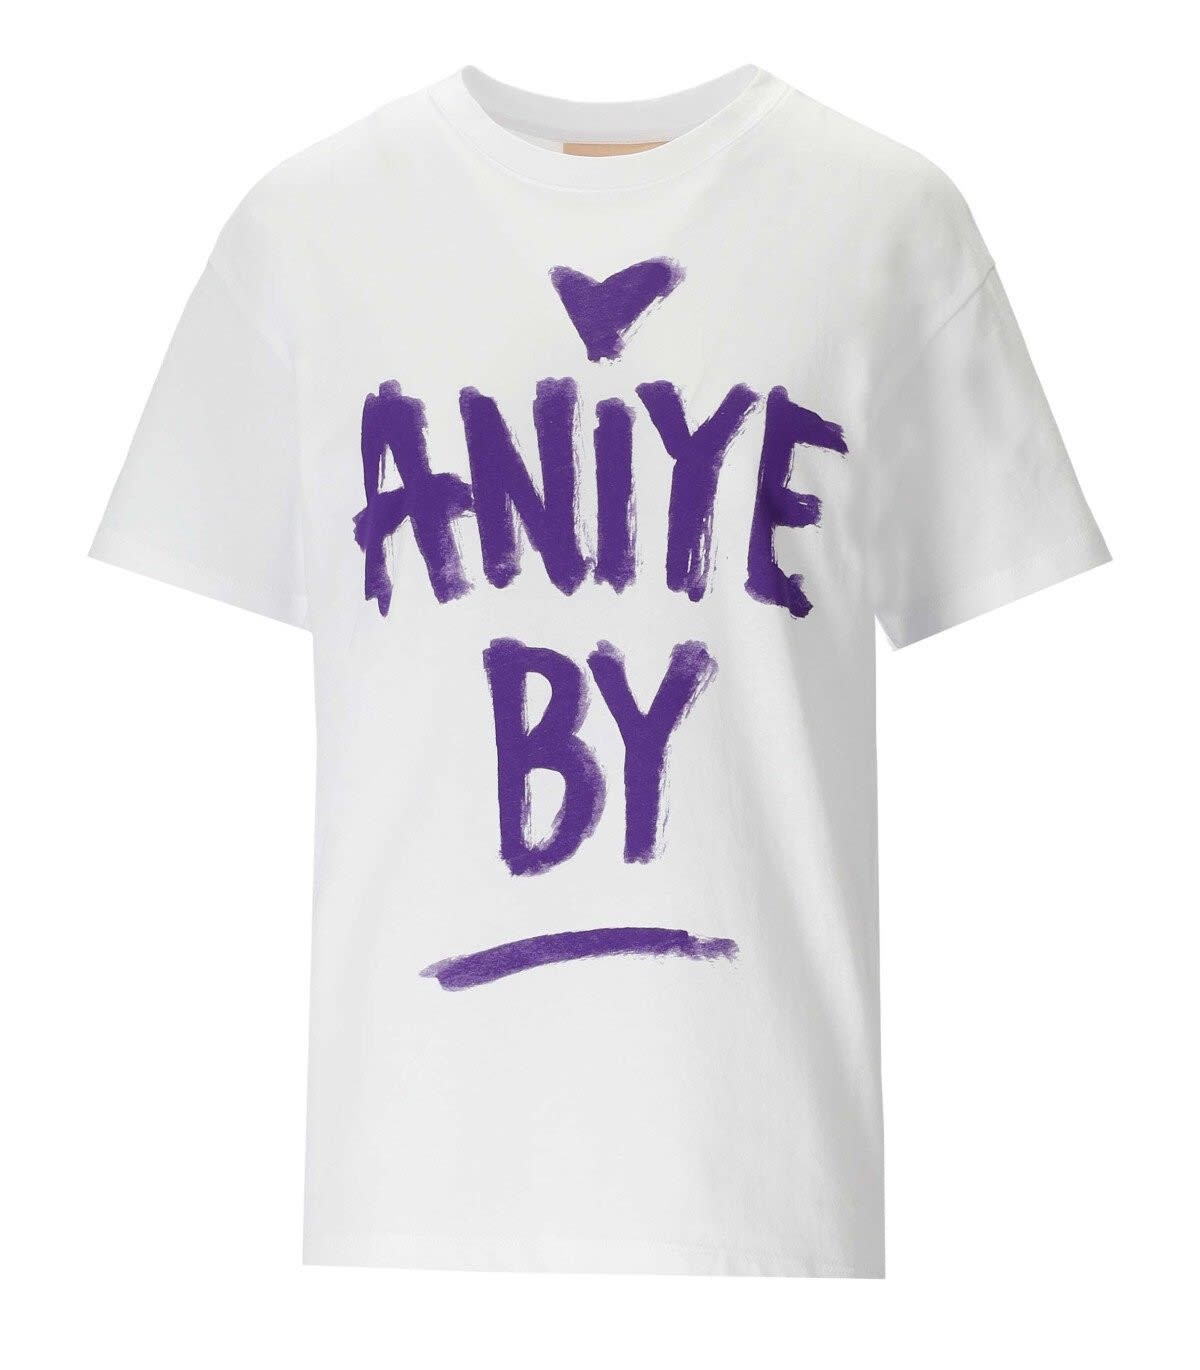 ANIYE BY ANIYE BY NYTA WHITE T-SHIRT